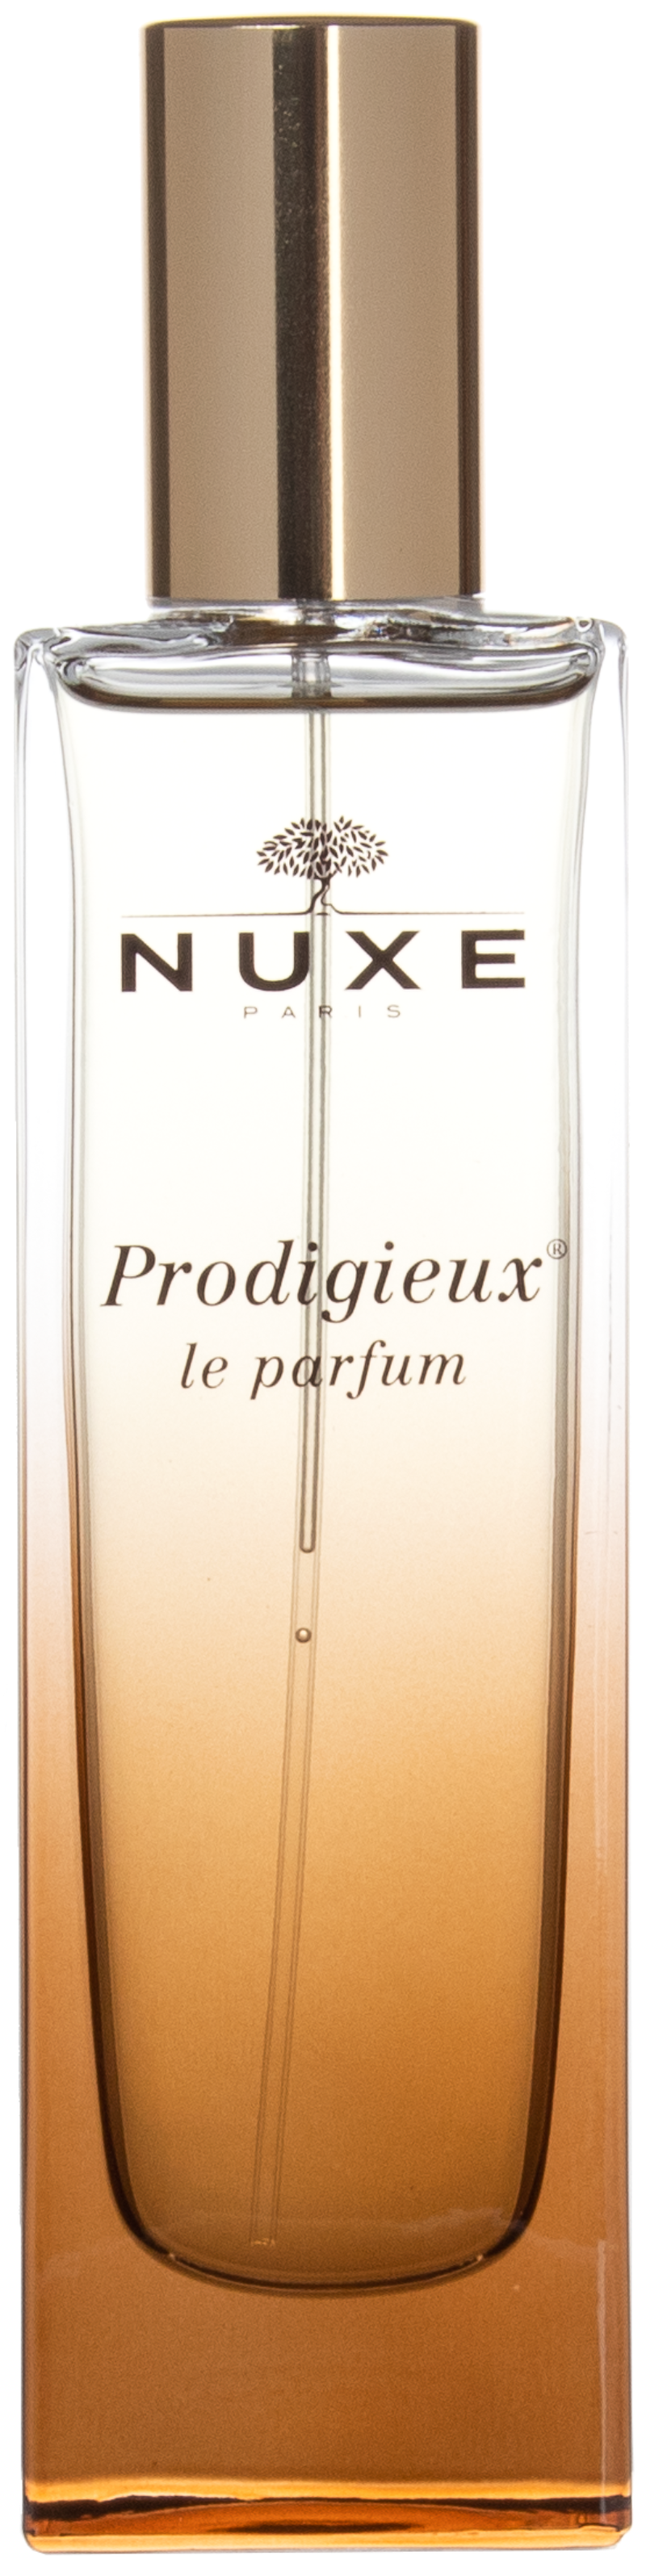 Nuxe - Prodigieux® Le Parfum 50 ml